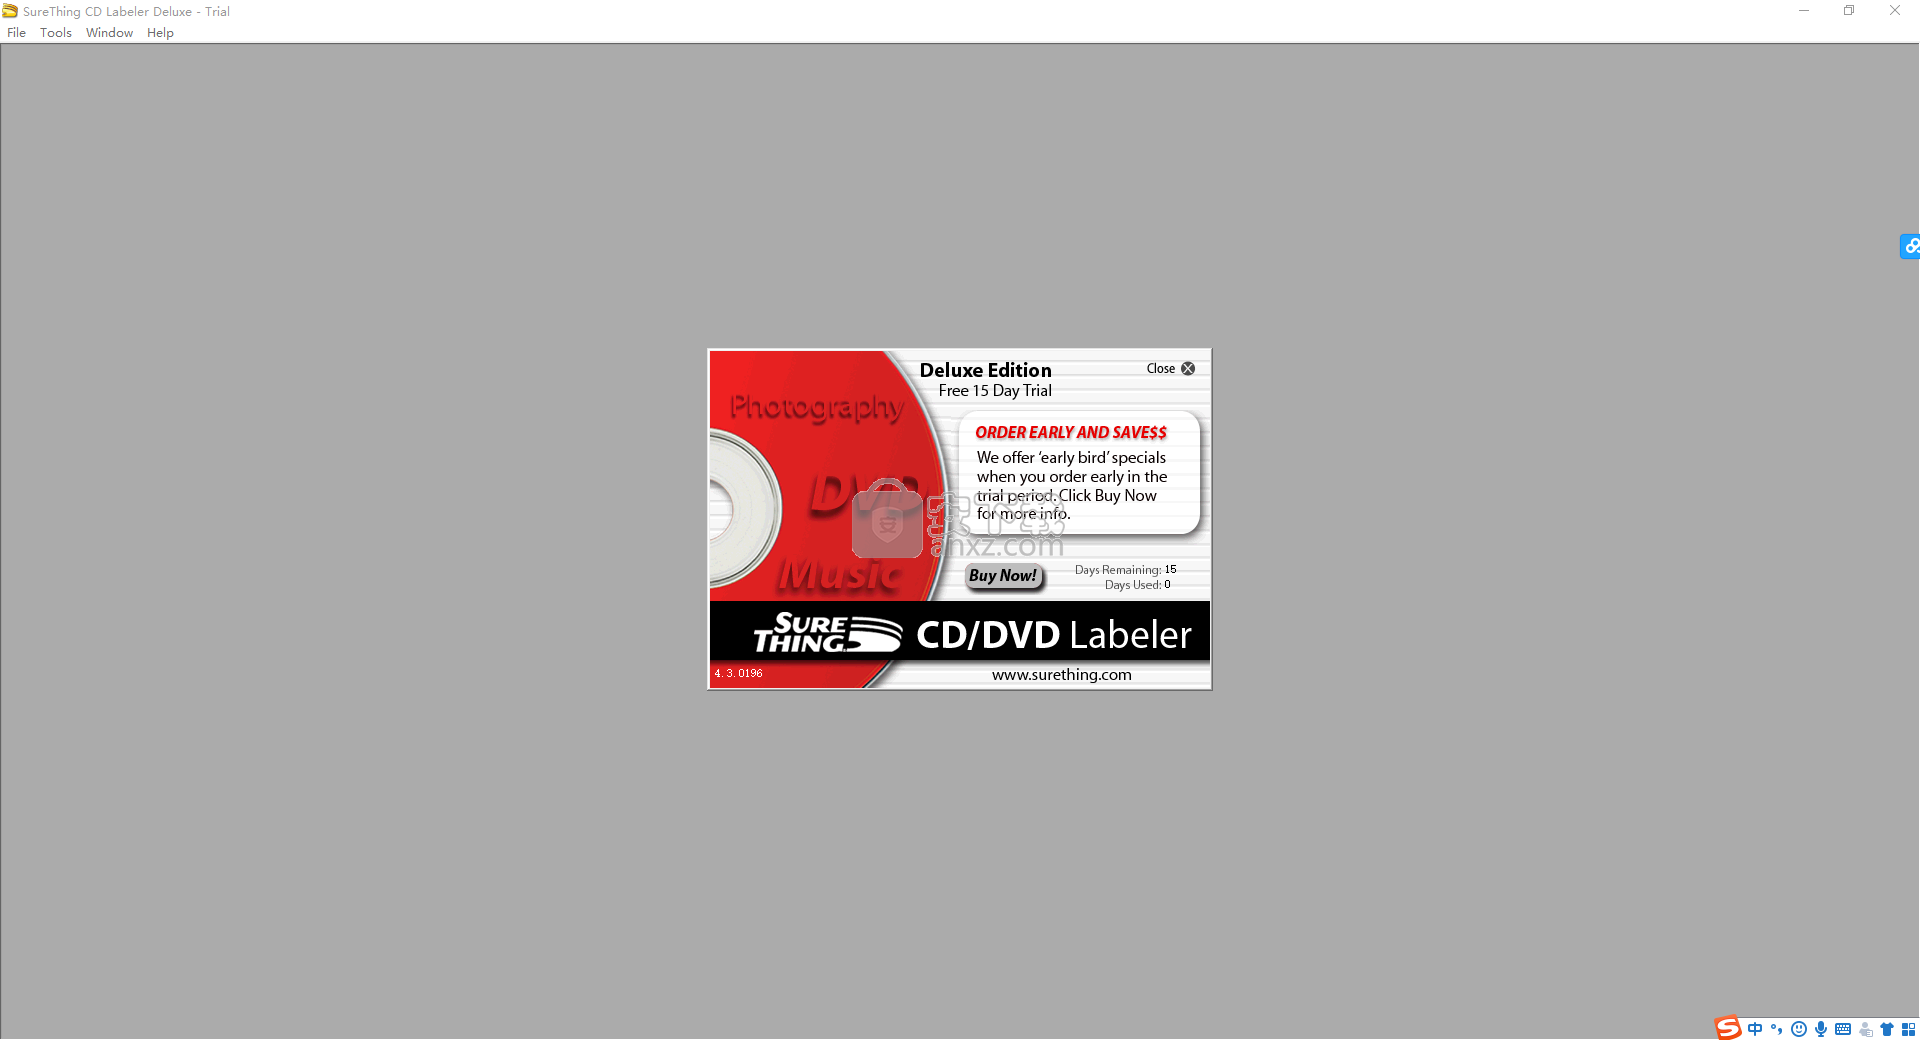 surething cd labeler vs